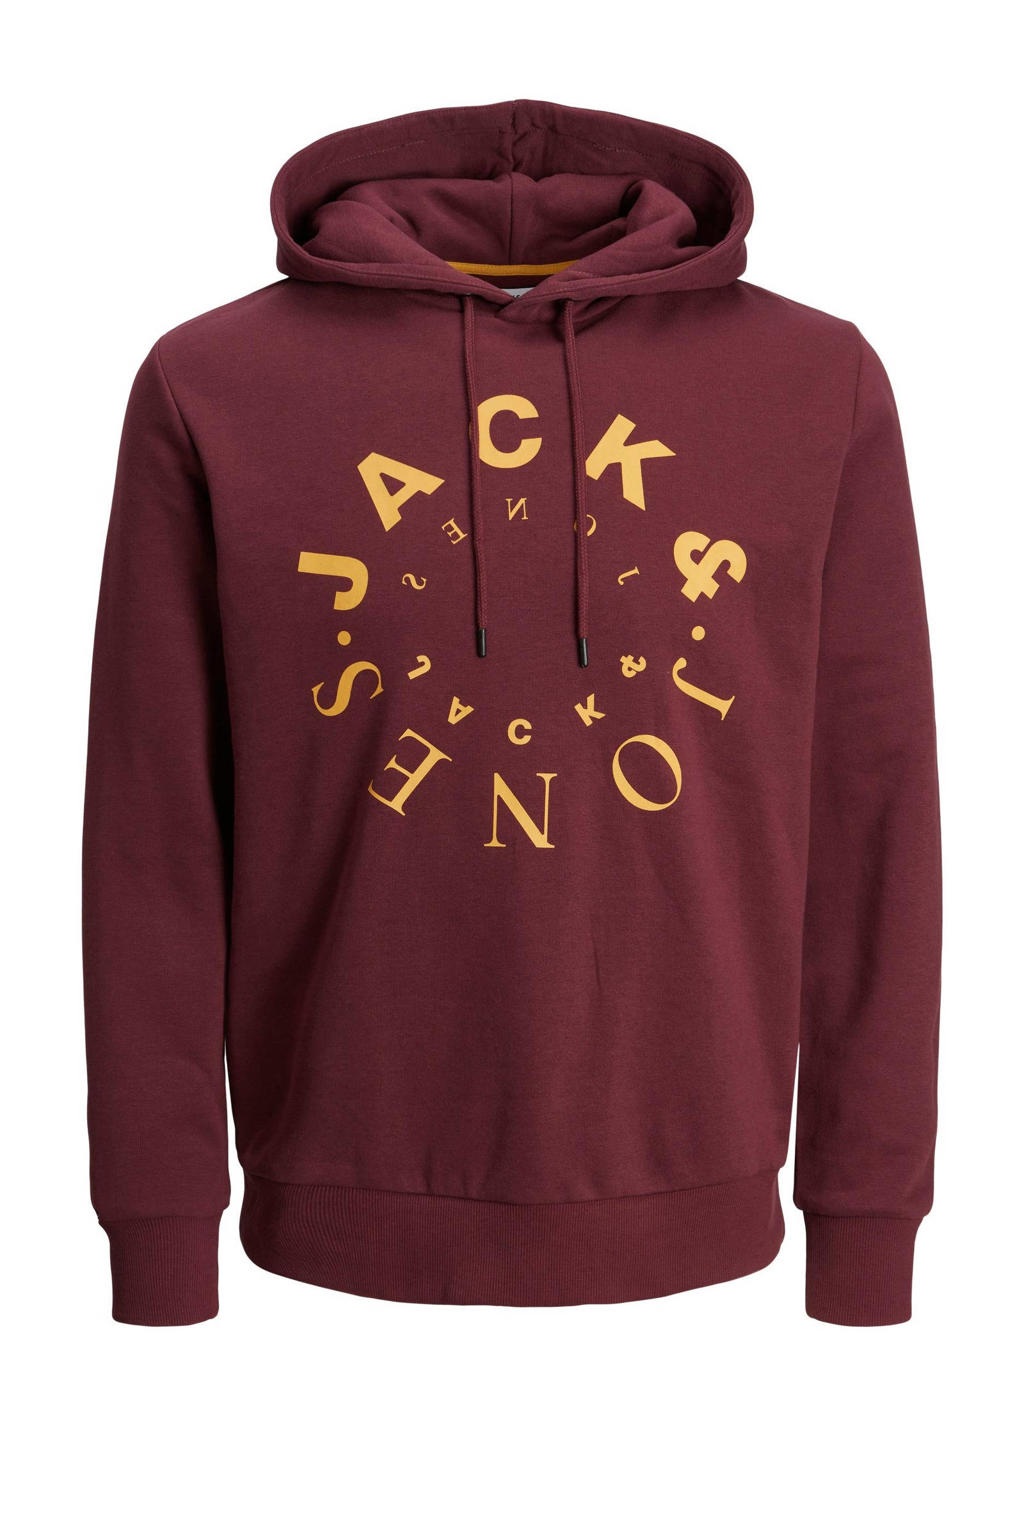 JACK & JONES PLUS SIZE hoodie JJWARRIOR Plus Size met printopdruk rood